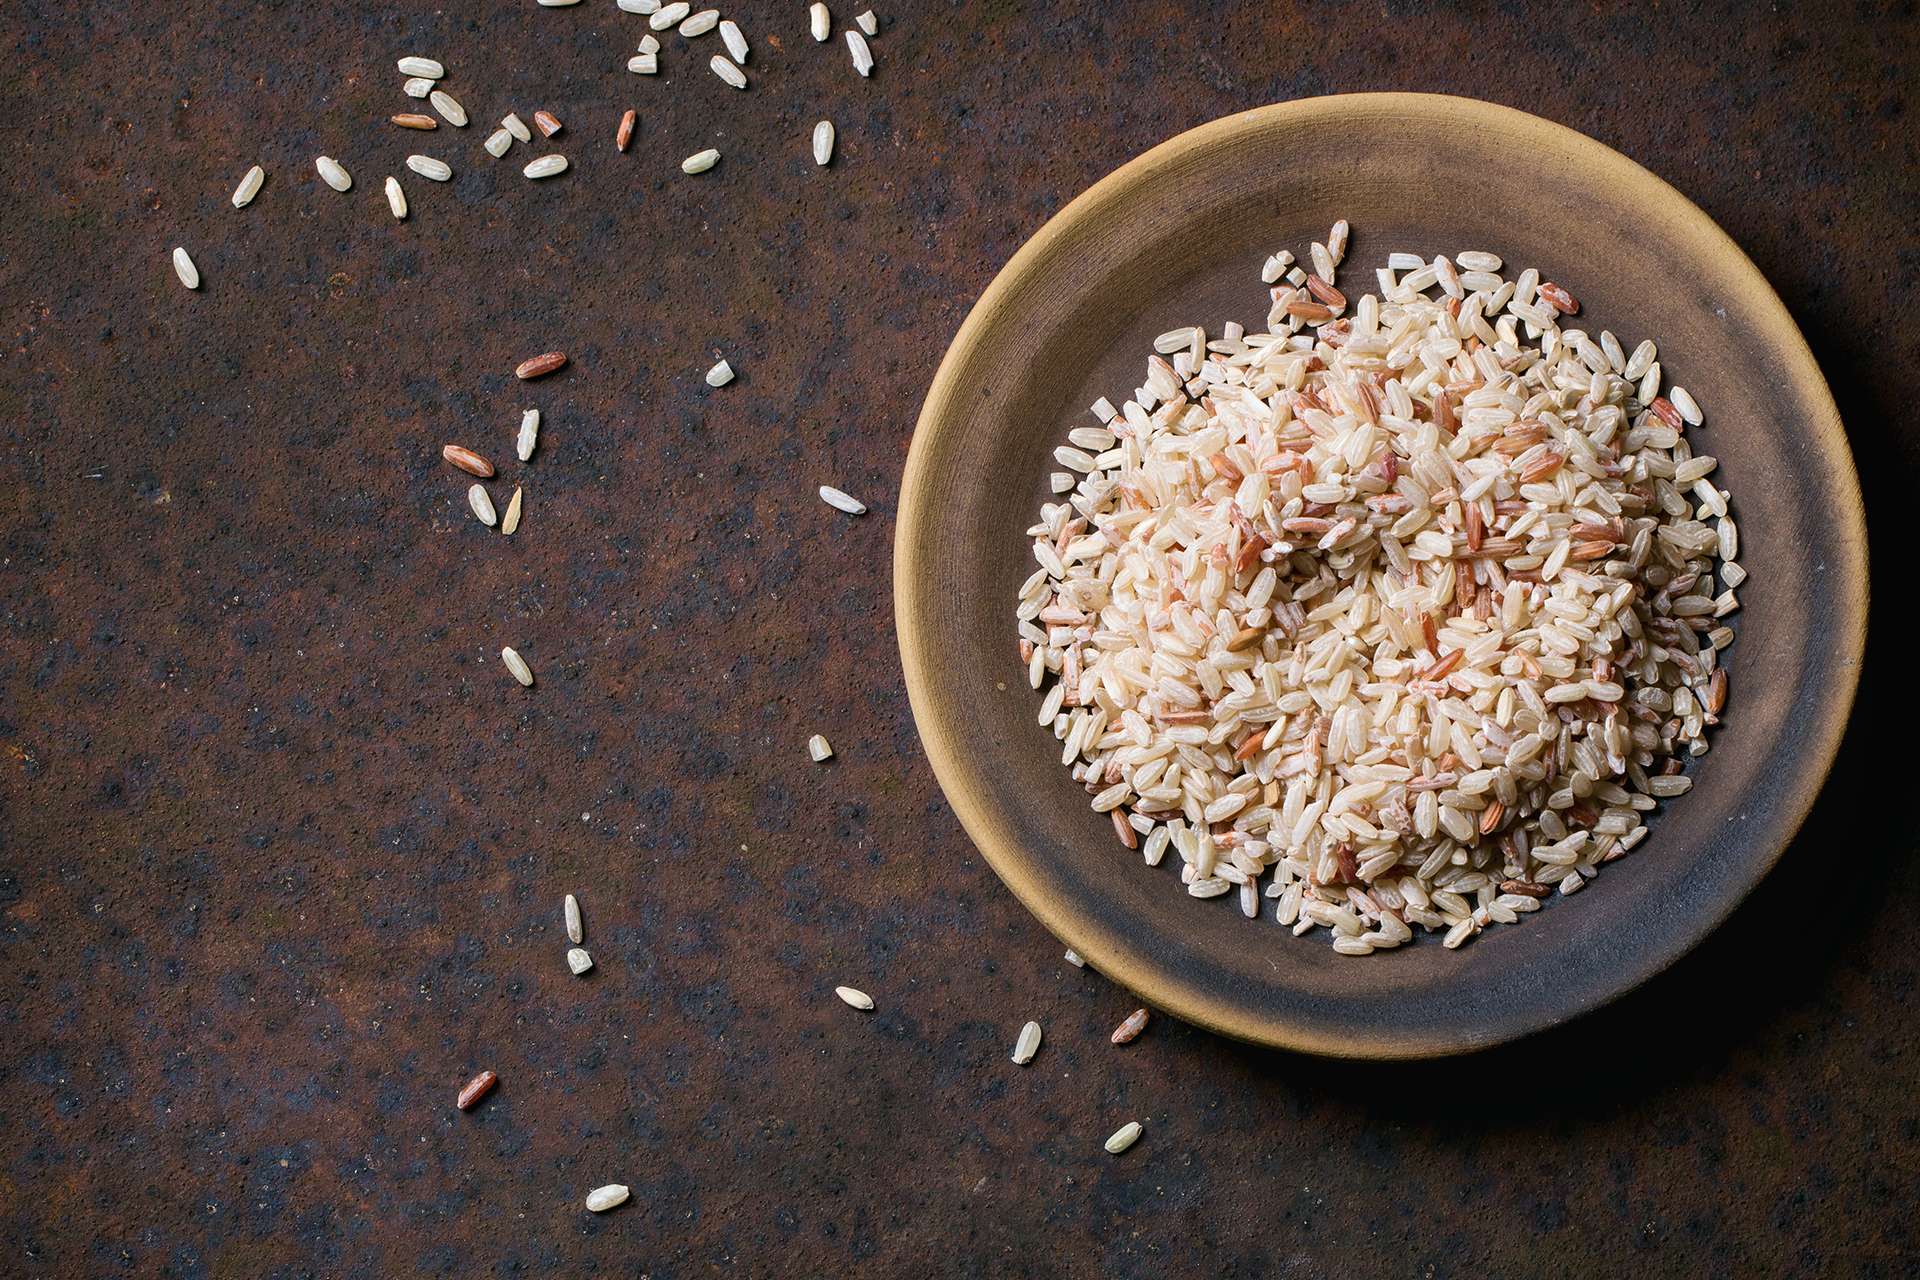 Охлаждение риса во время варки позволяет получить пользу именно от этого крахмалистого продукта.